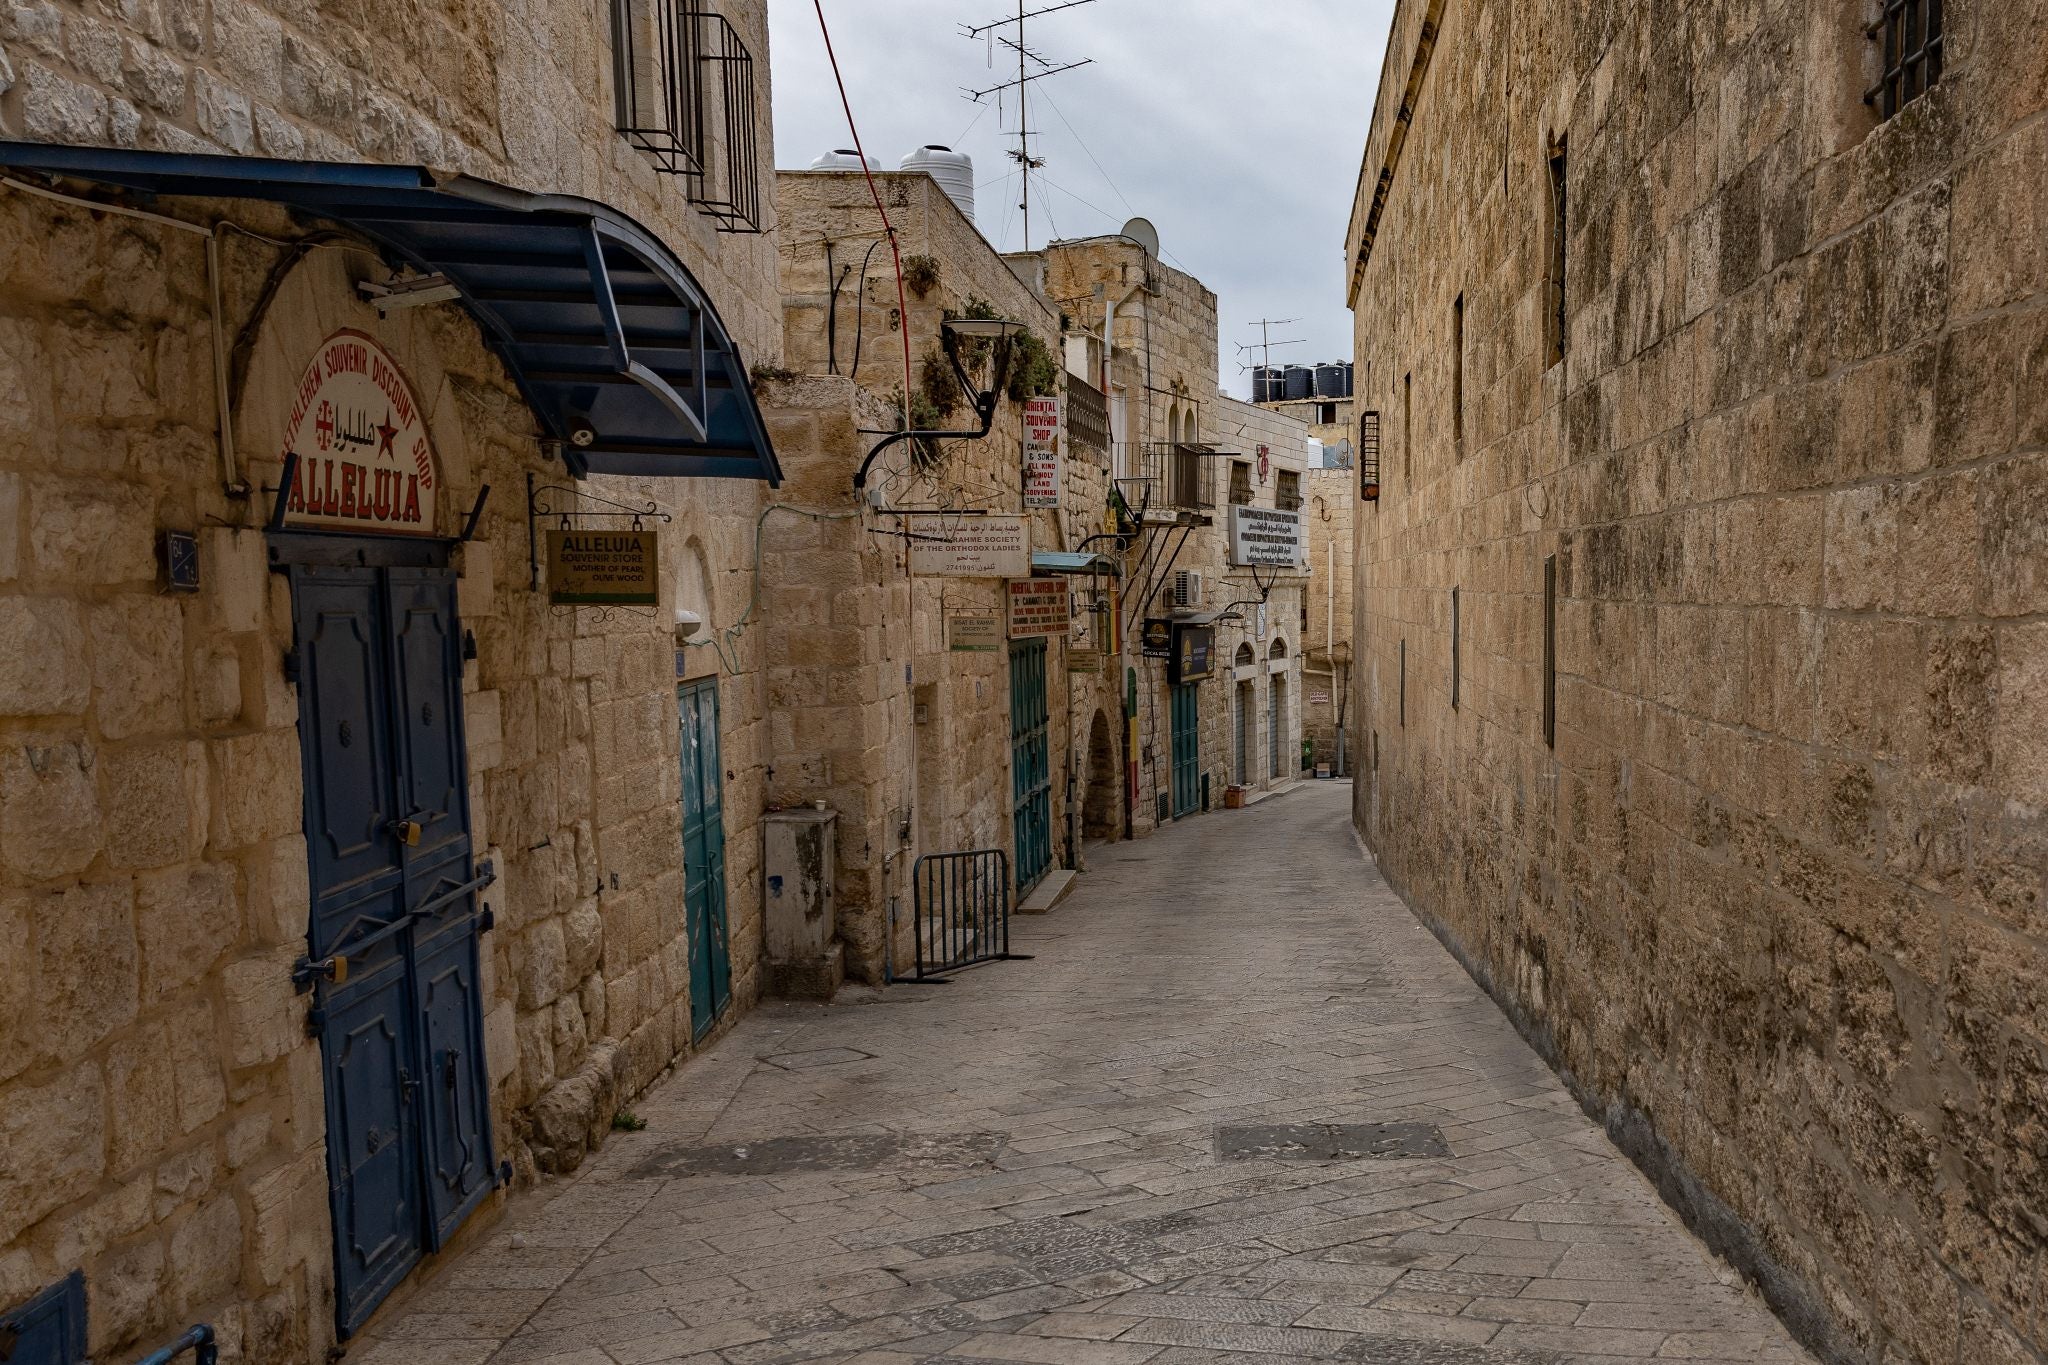 Some of the shuttered shops in Bethlehem